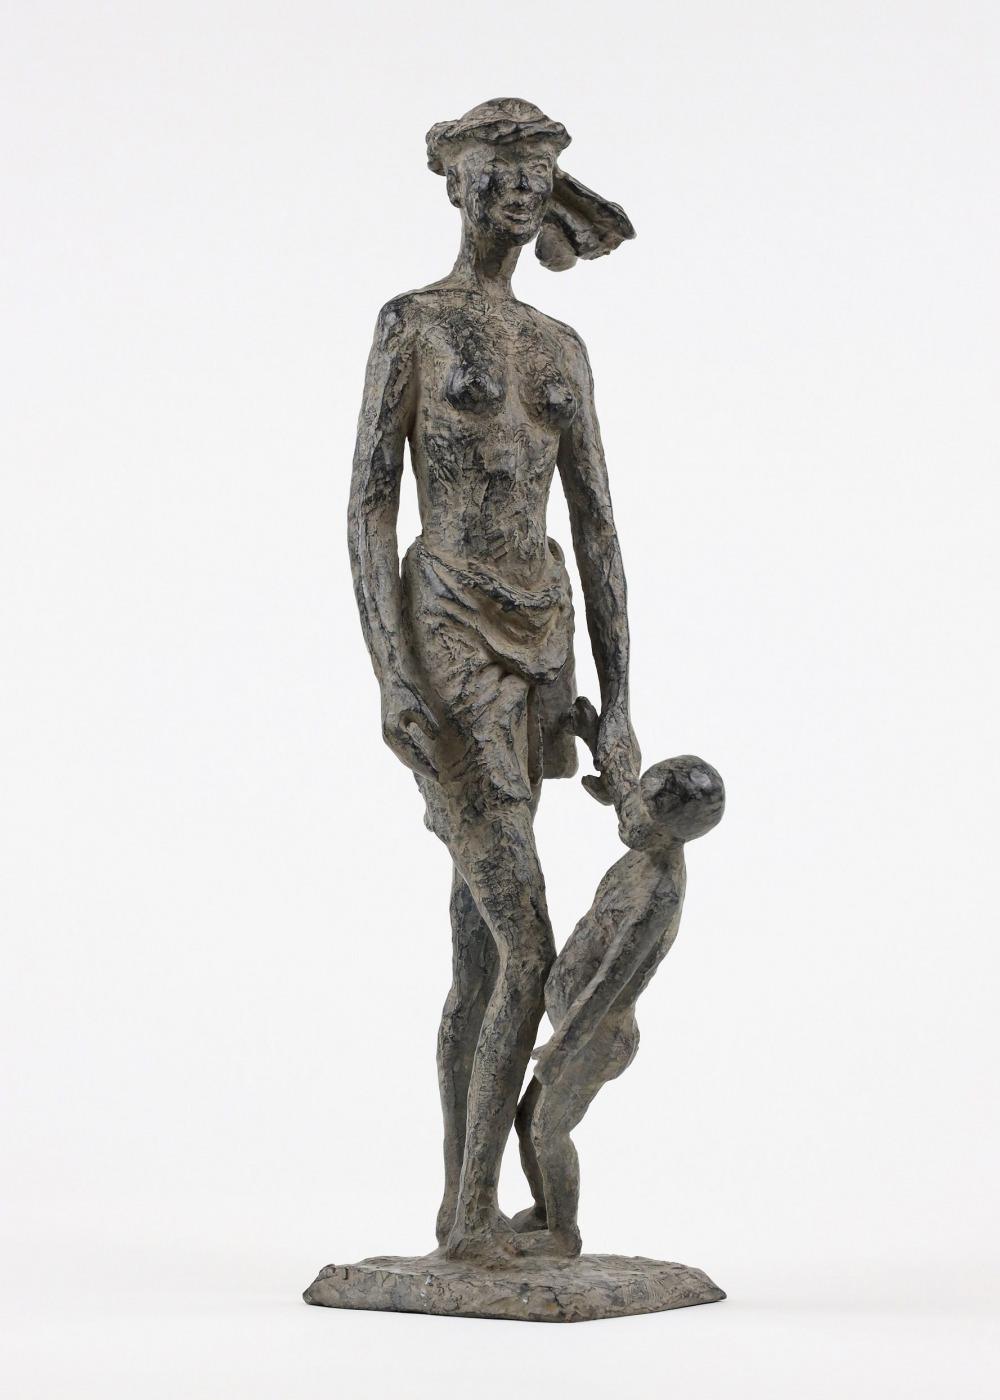 All the time in the world est une sculpture en bronze de l'artiste contemporaine française Marine de Soos, dont les dimensions sont de 40 × 17 × 12 cm (15,7 × 6,7 × 4,7 in). 
La sculpture est signée et numérotée, elle fait partie d'une édition